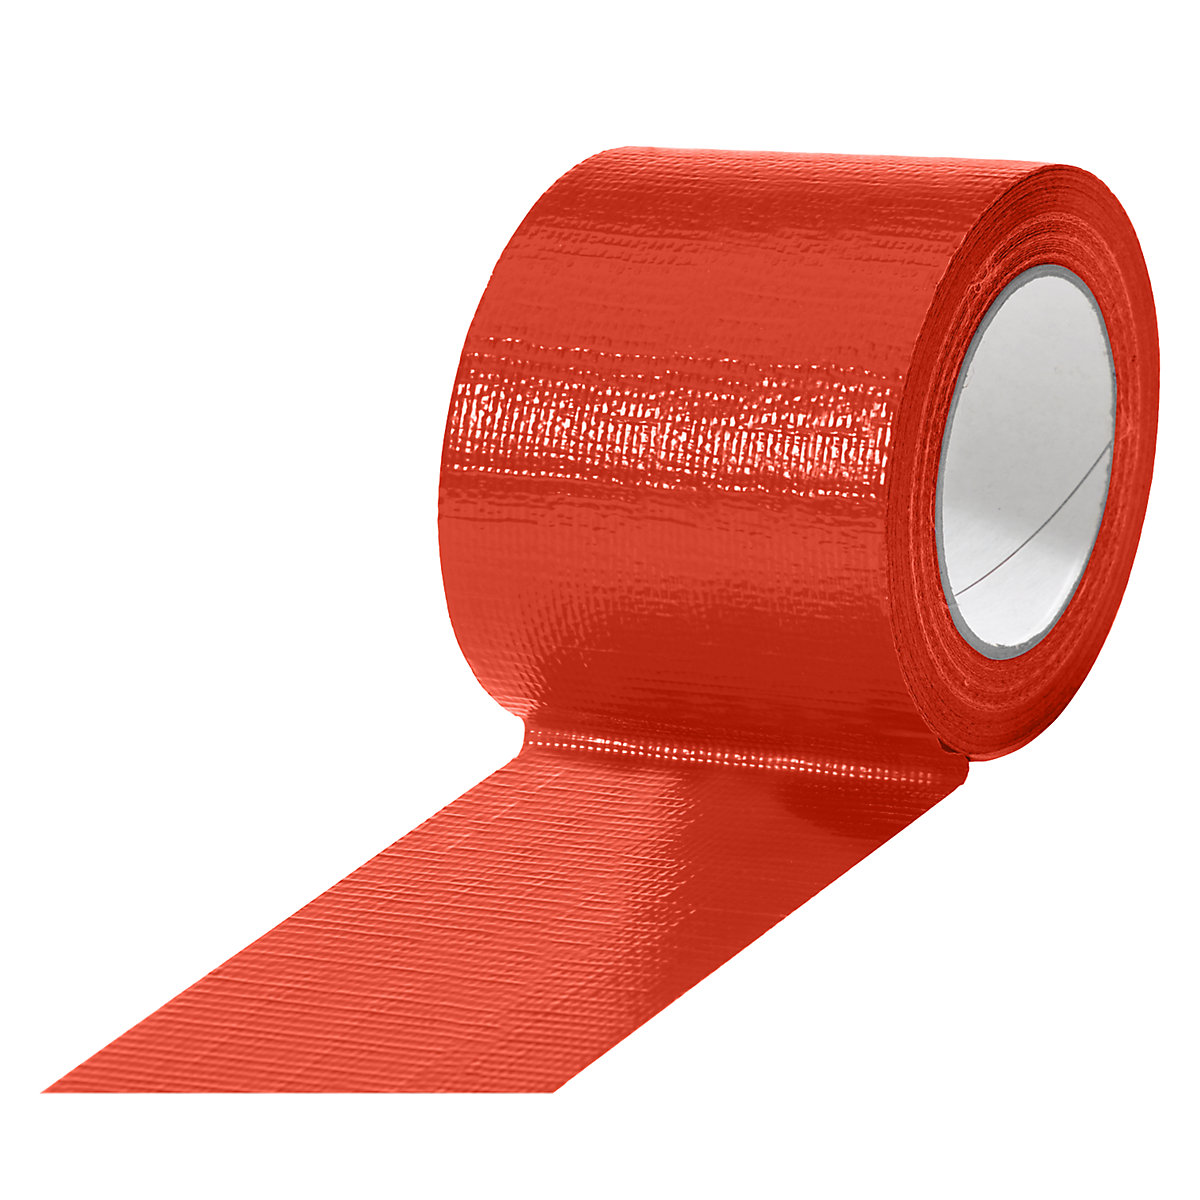 Gewebeband, in verschiedenen Farben, VE 12 Rollen, rot, Bandbreite 75 mm-17